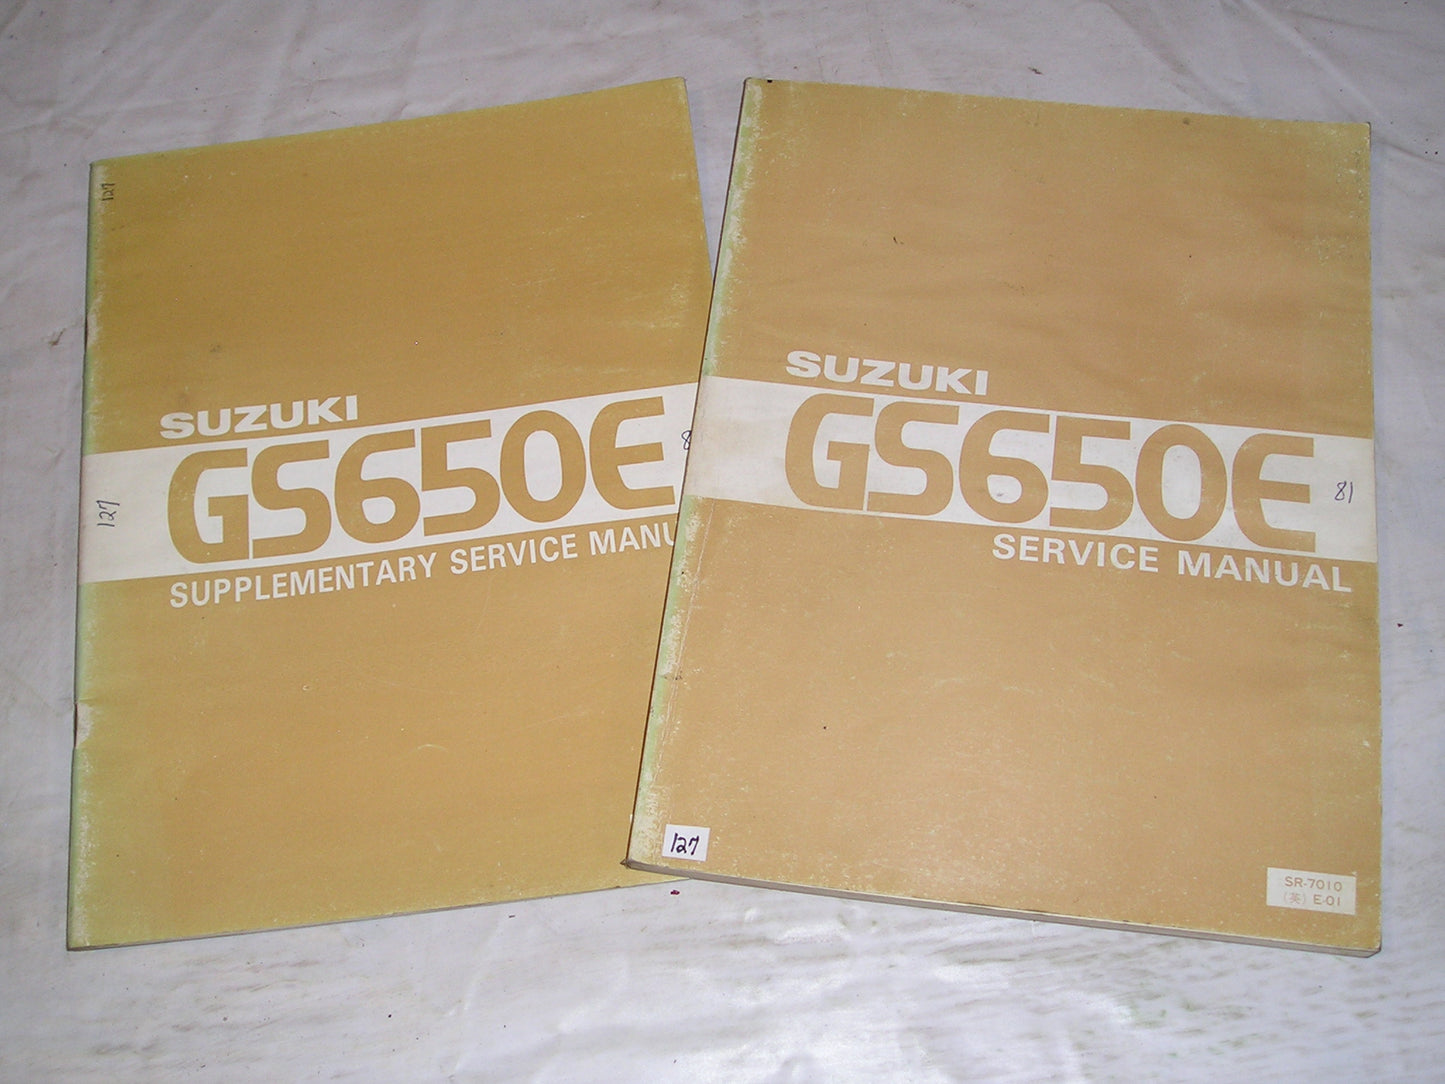 SUZUKI GS650 E EZ  1981-1982 Service & Supplement Manuals  SR-7010 E-01  99501-36010-01E  #127